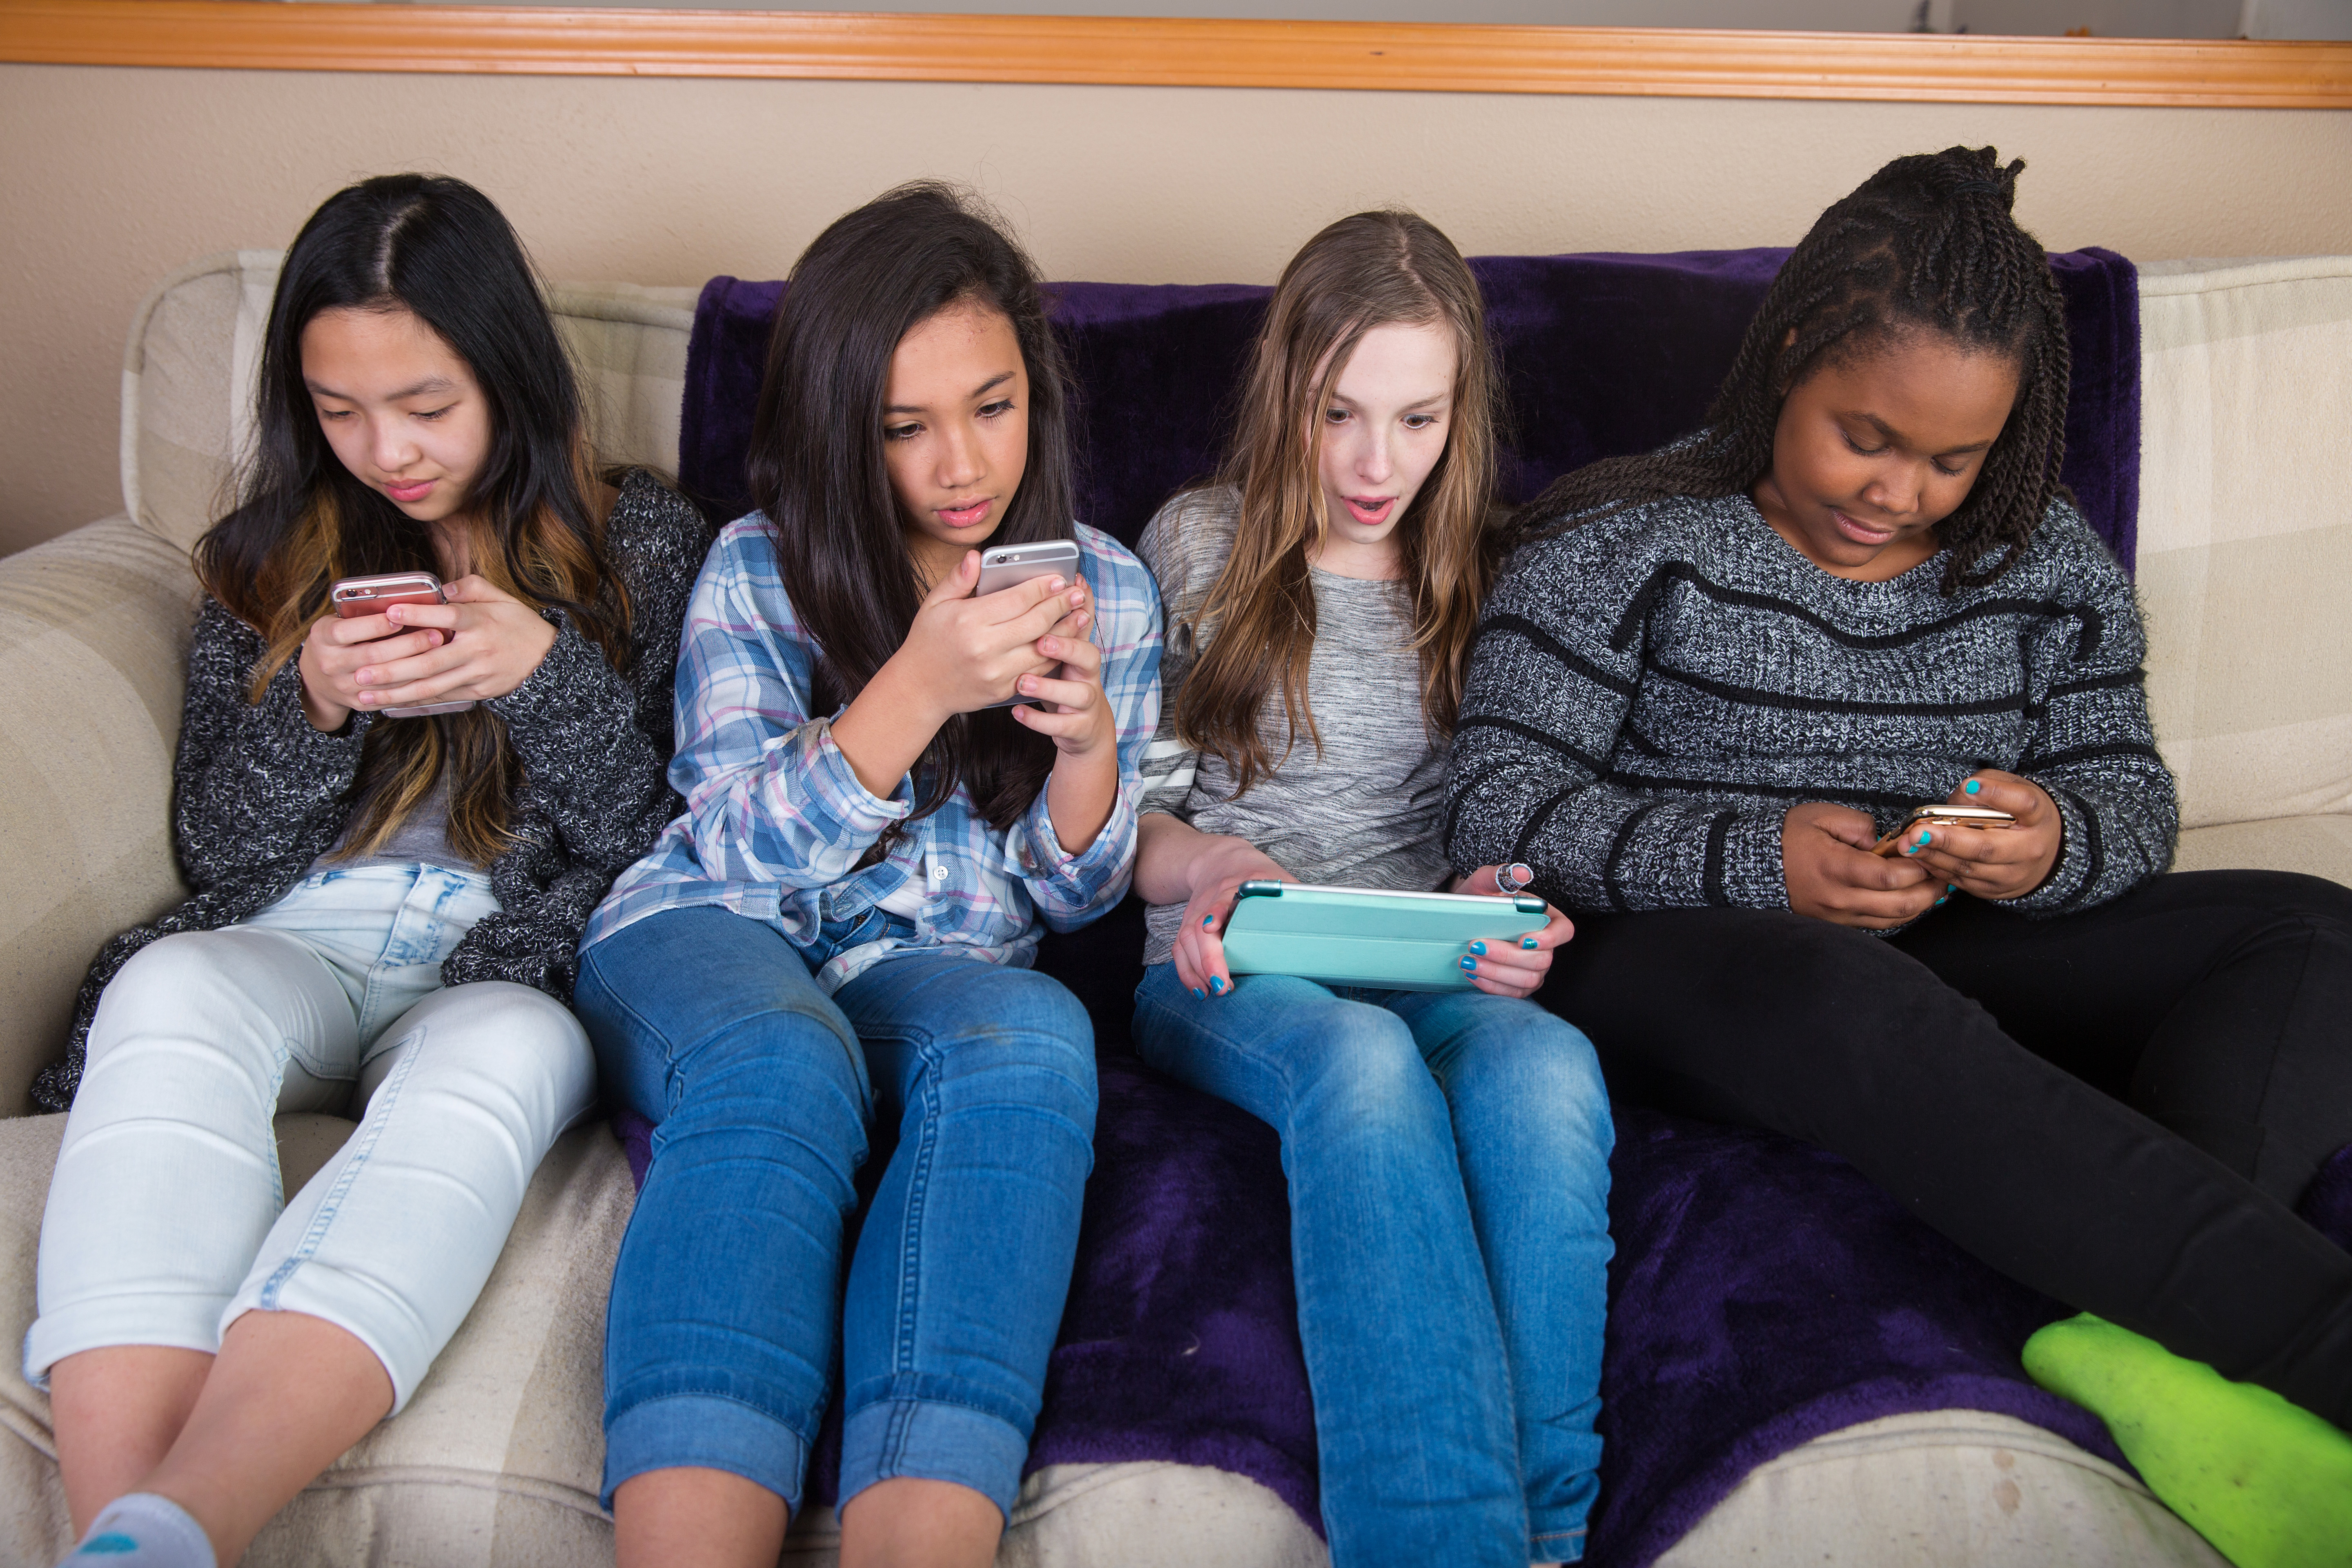 Parent posting. Смартфон для девочки 10 лет. Tween группа. Social Media Tween. Kids social Media.